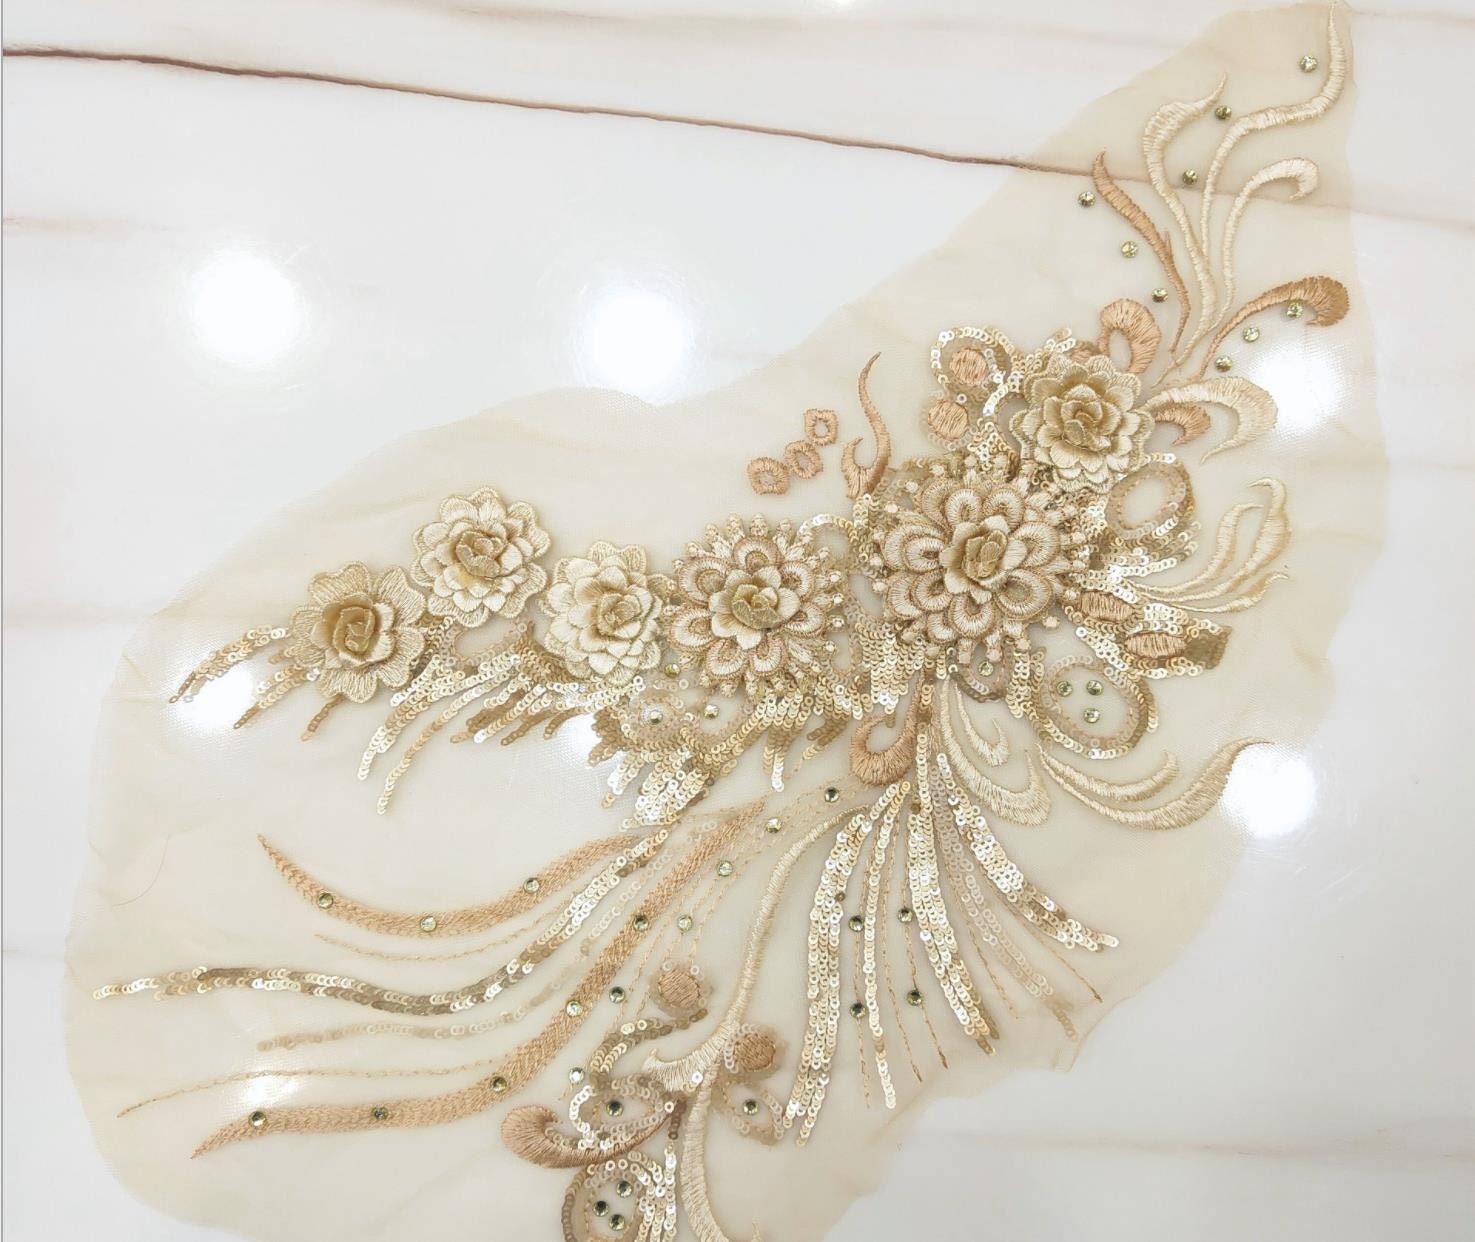 ballet lyrical dances haute couture dresses suitable for wedding dresses Multi-color 3D sequined lace appliques